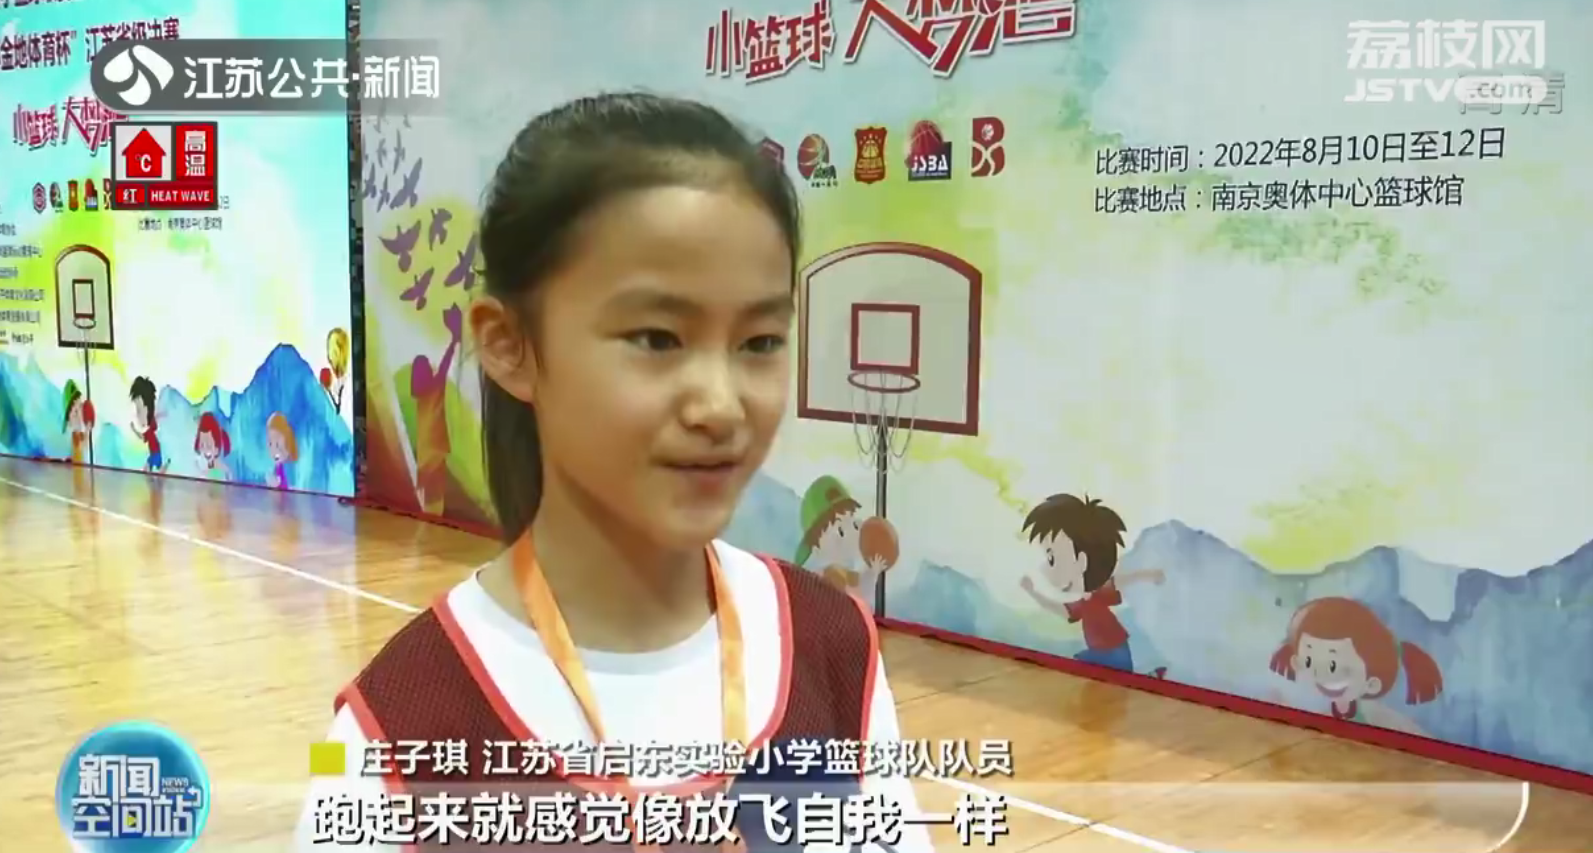 江苏省体校篮球比赛(江苏省小篮球联赛决赛在南京打响 近万名小队员参赛)